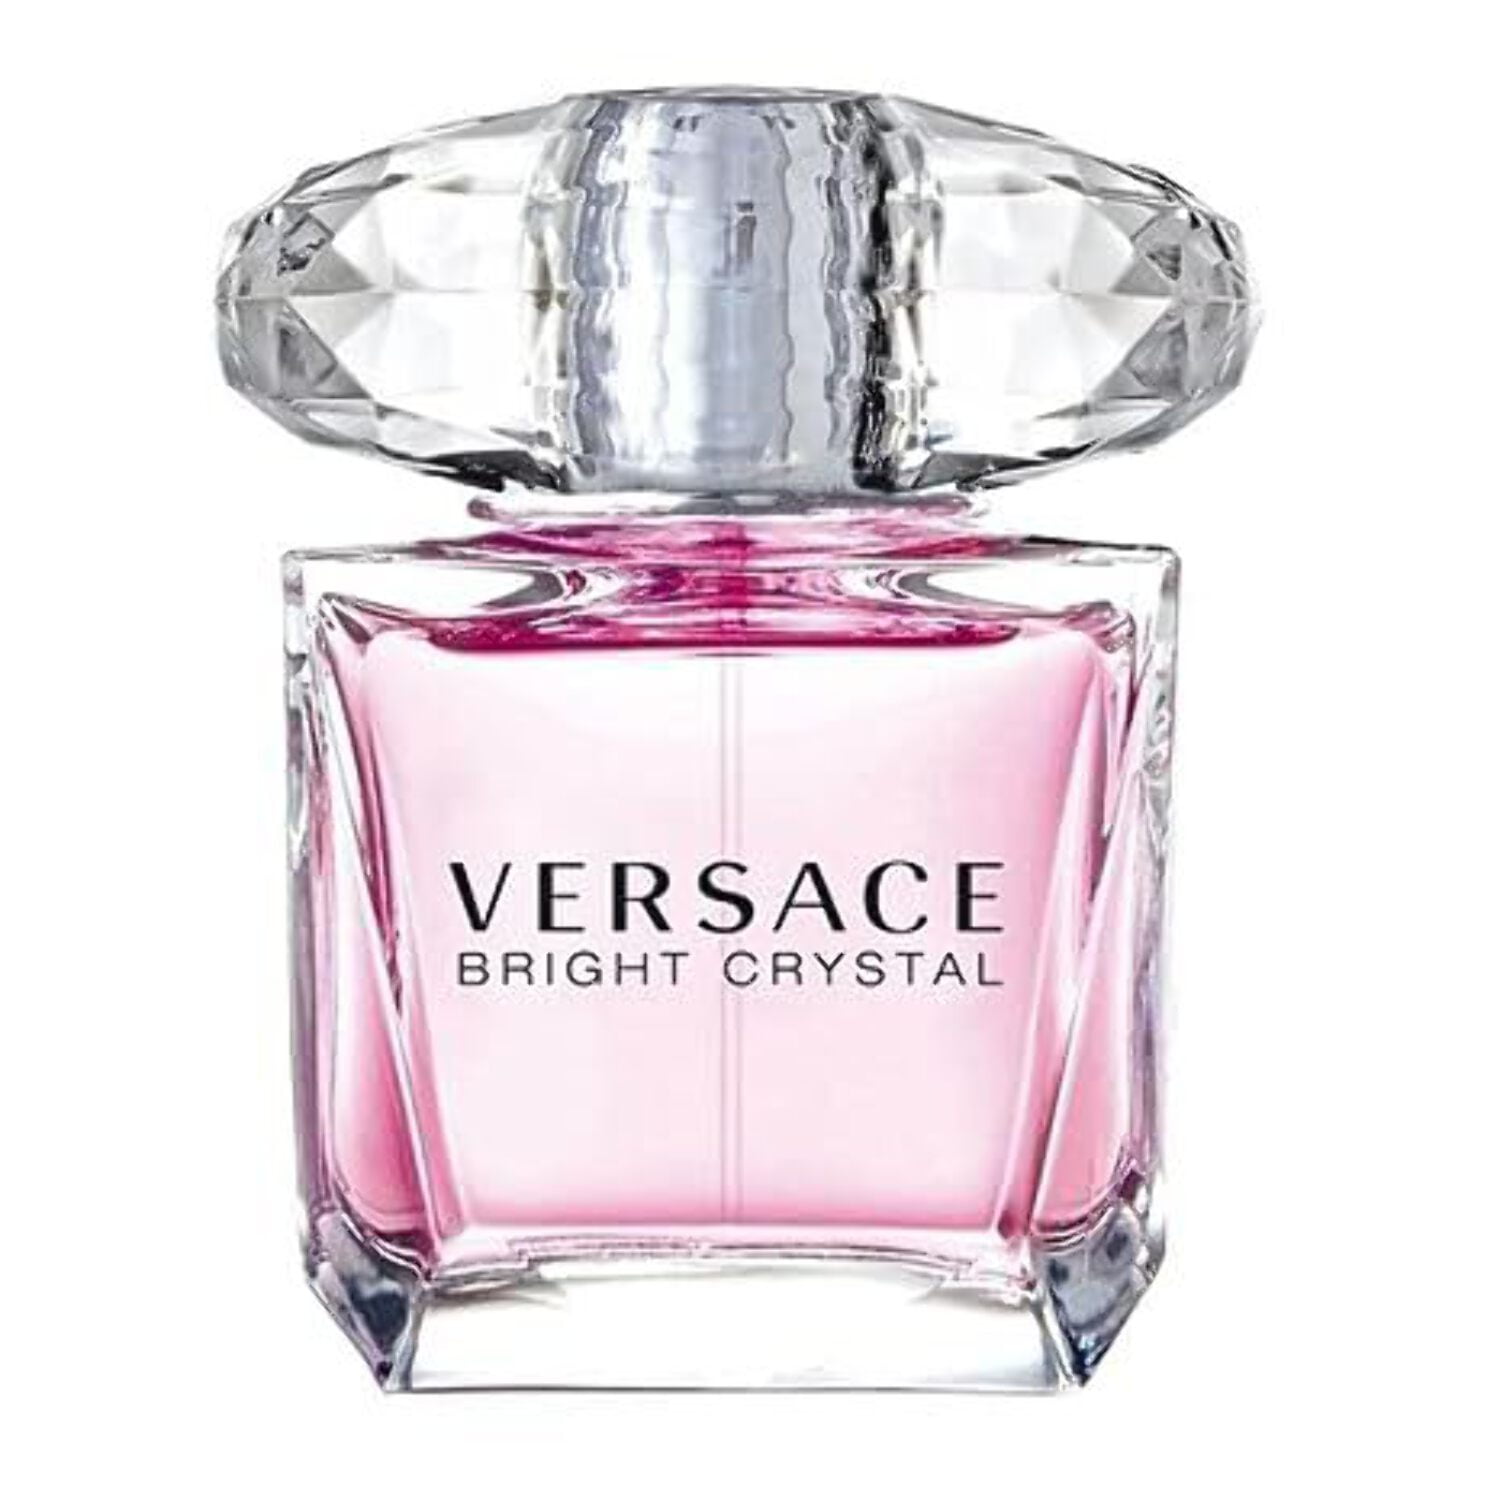 Versace Eros Flame Eau De Parfum Vaporizzatore - Bellezza Eau de parfum Uomo  67,08 €